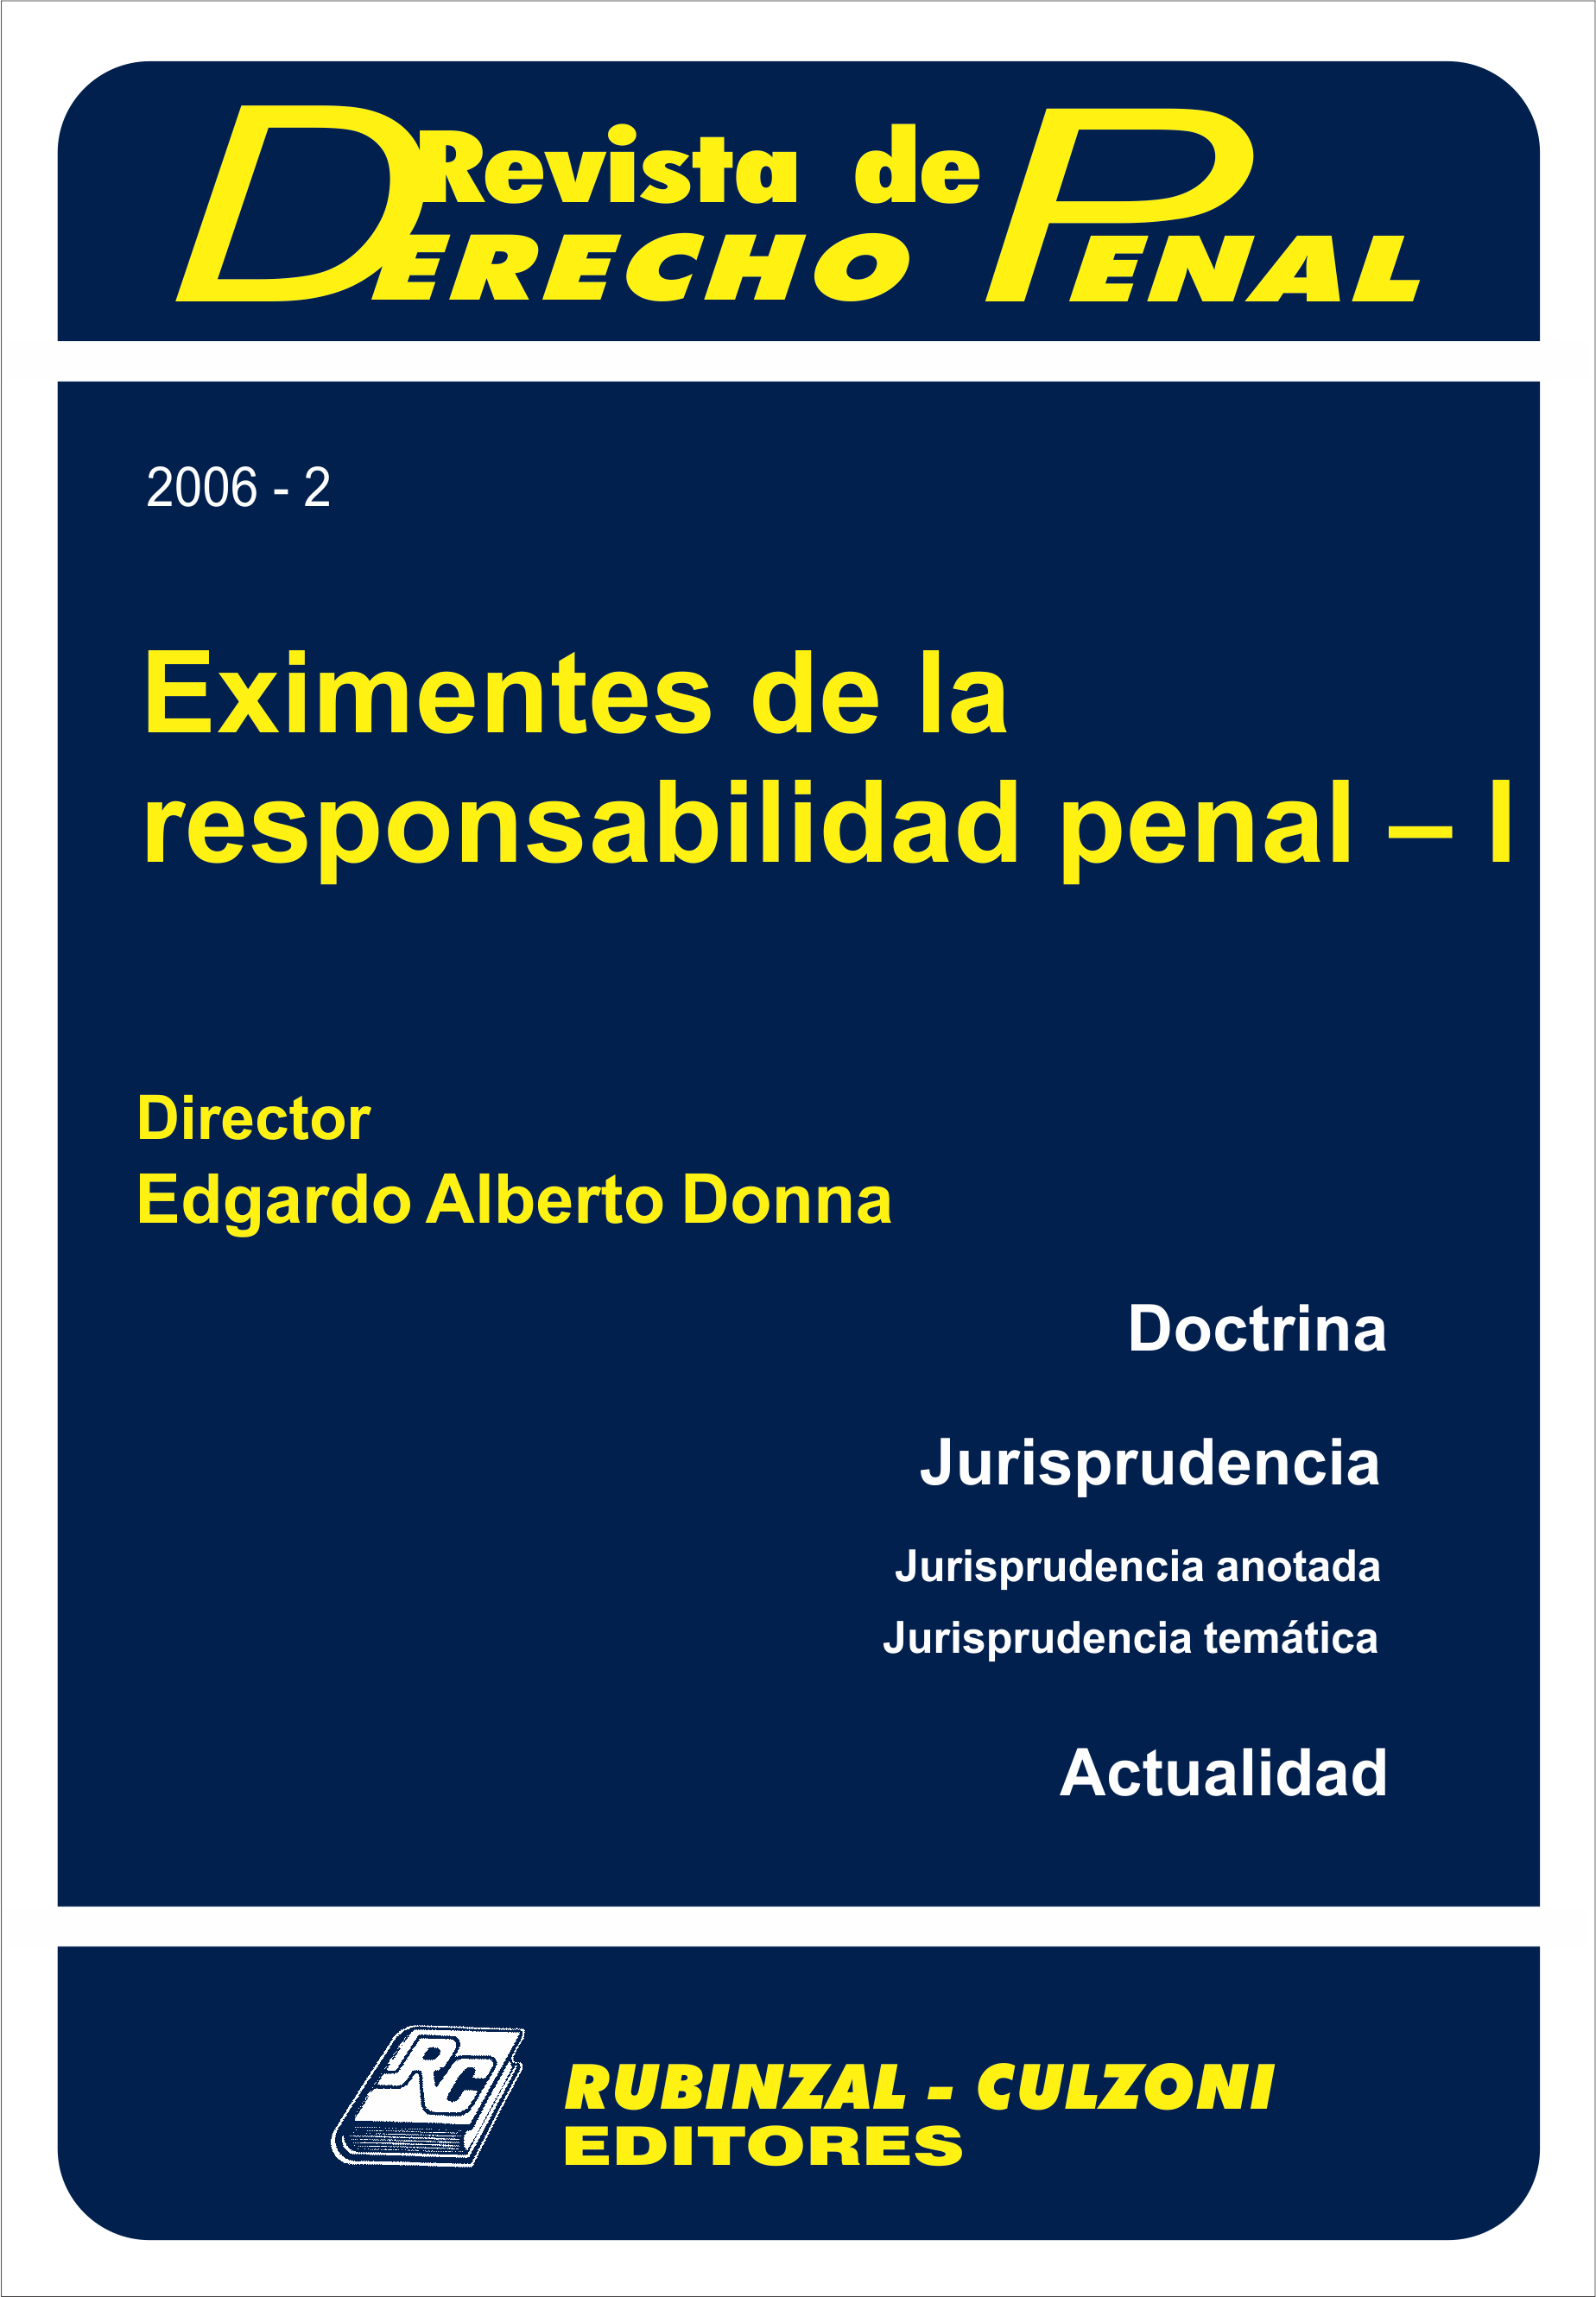 Revista de Derecho Penal - Eximentes de la responsabilidad penal - I.